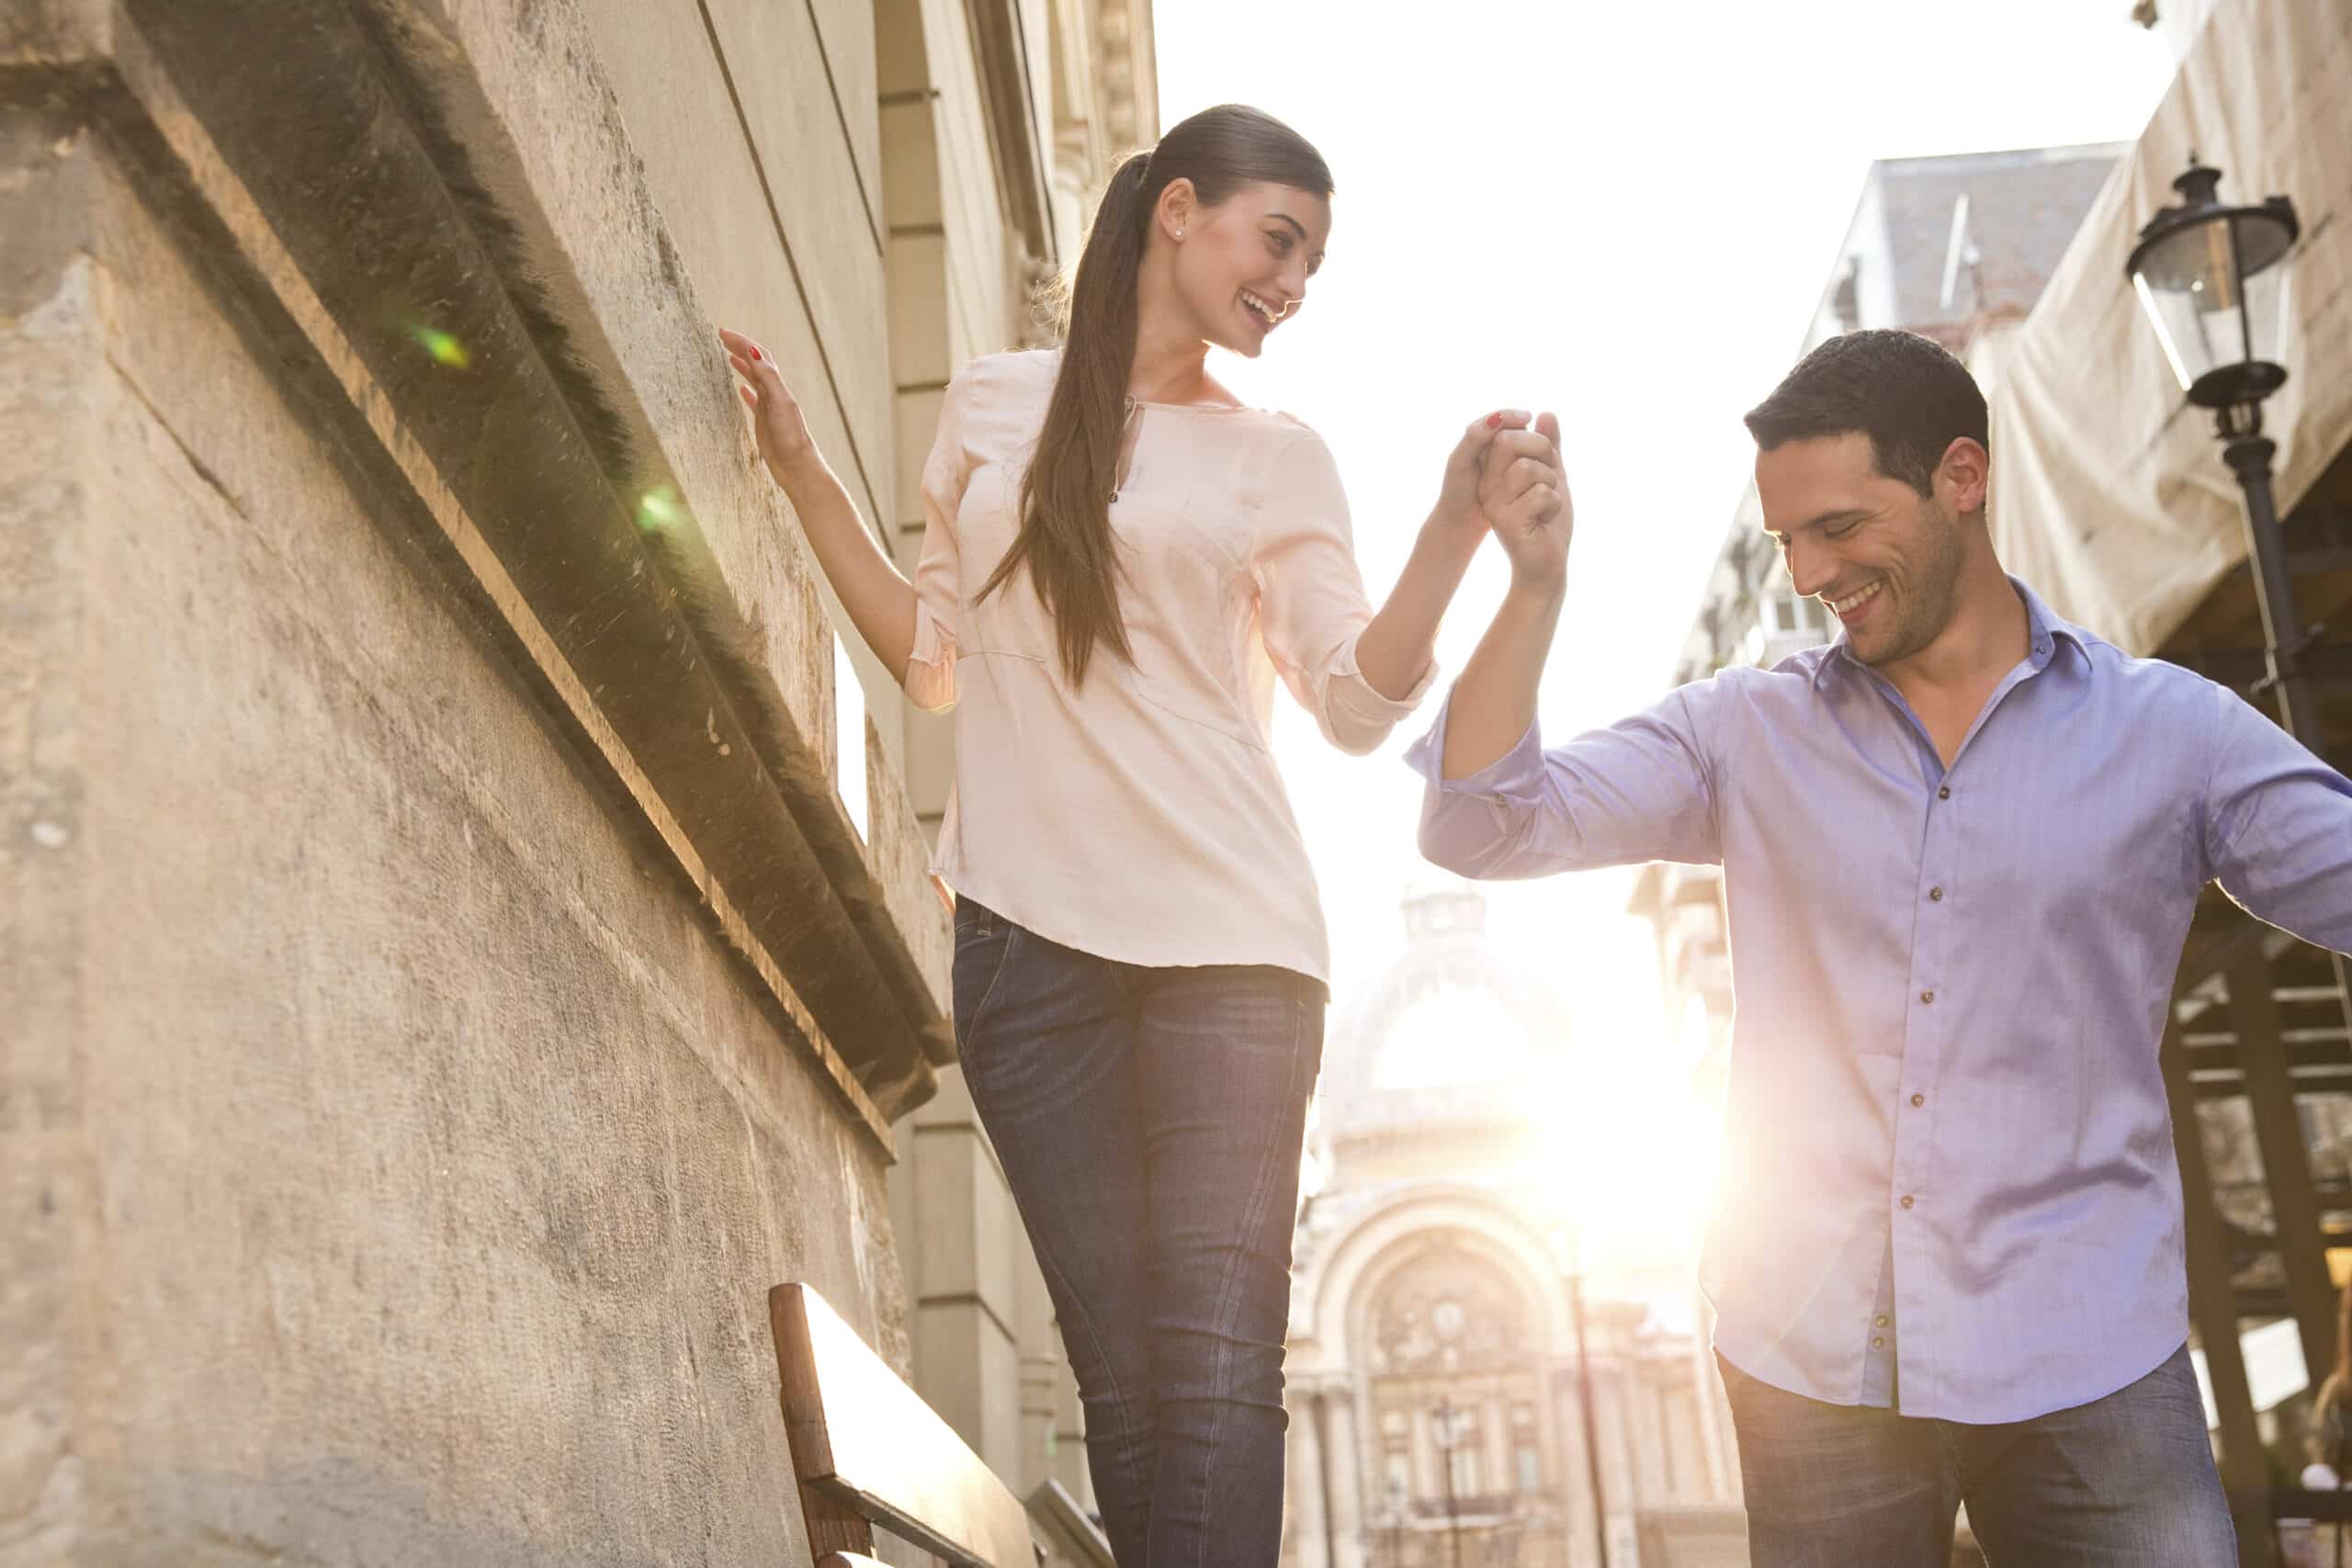 Ein fröhliches Paar tanzt auf einer sonnenbeschienenen Stadtstraße. Die Frau führt den Mann an der Hand und hält ihn. Beide lächeln breit vor der malerischen städtischen Kulisse. © Fotografie Tomas Rodriguez